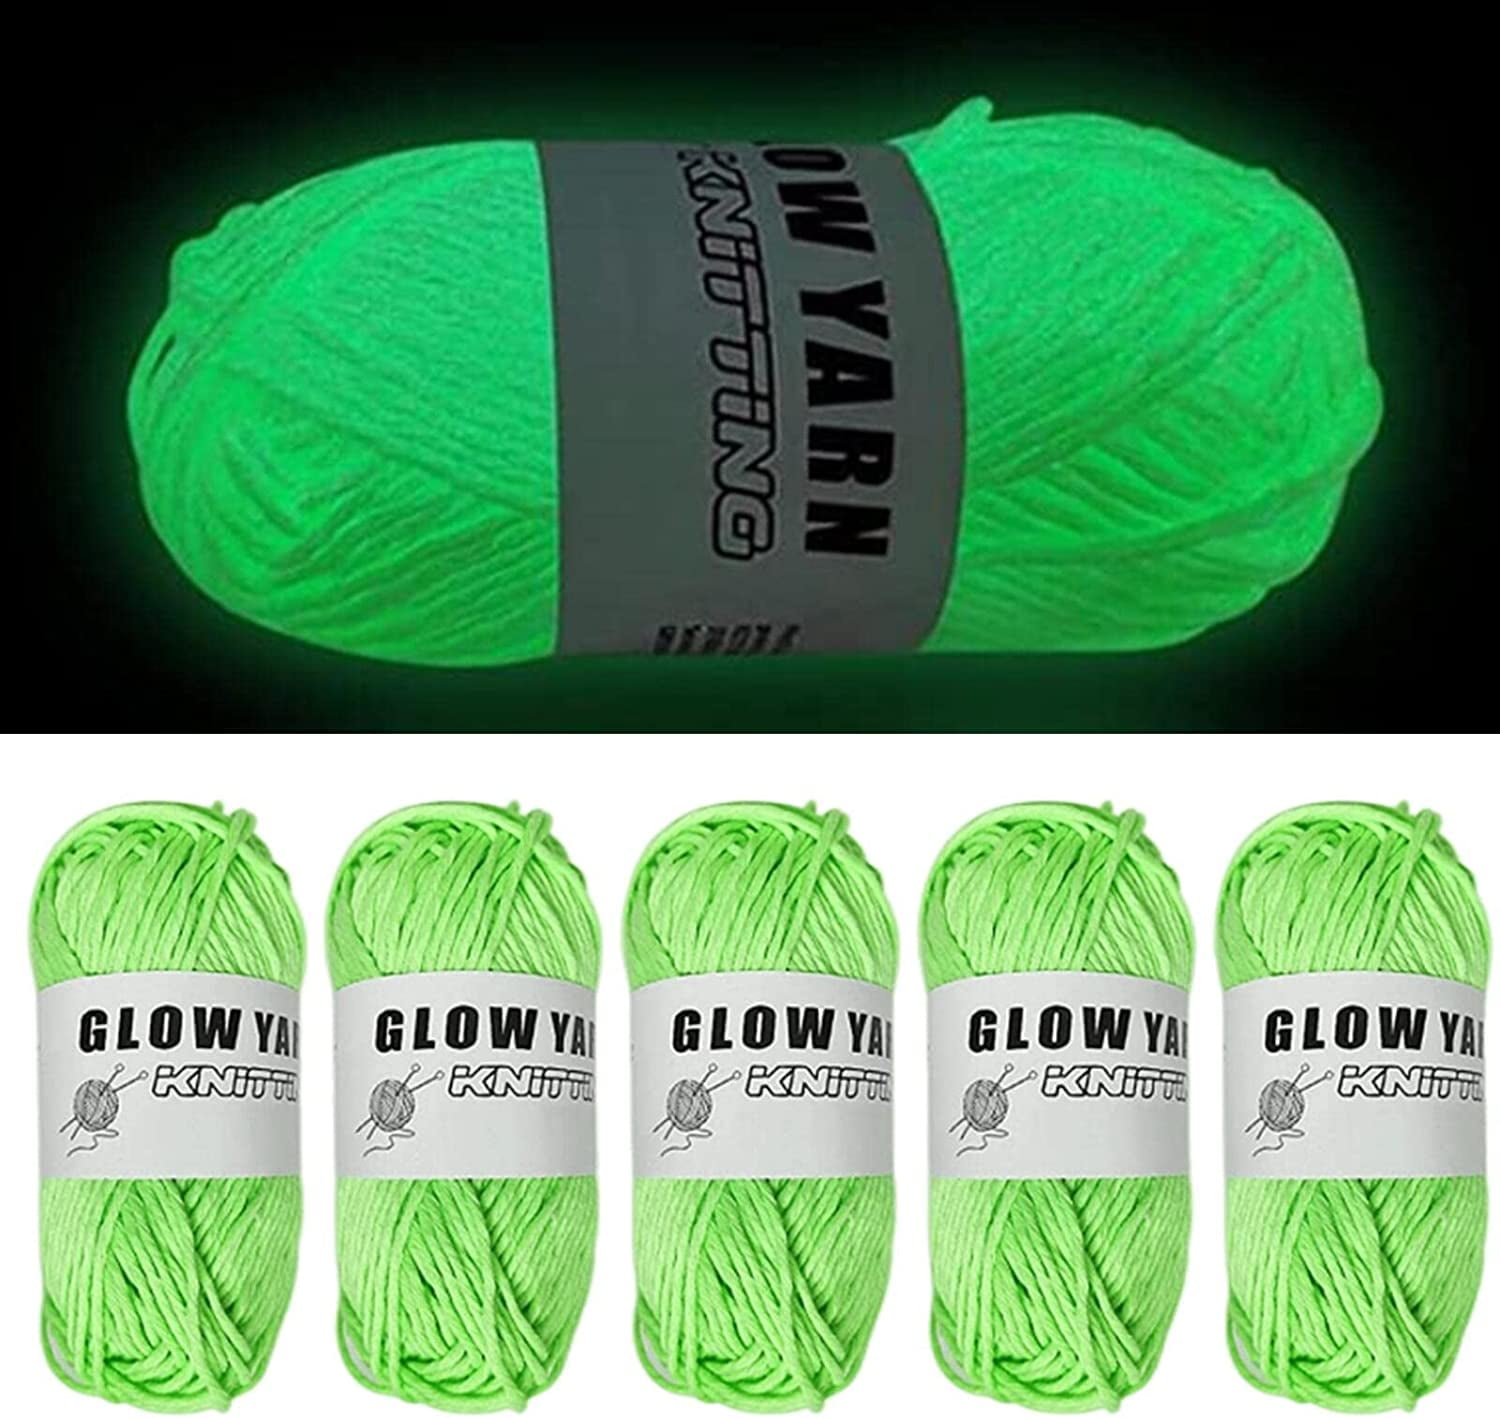 Aurigate DIY Glow in The Dark Yarn - 2 Rolls Yarn for Crocheting, Glow in The Dark Yarn for Crochet, Glow Yarn for Knitting, Crocheting, Crafts Sewing